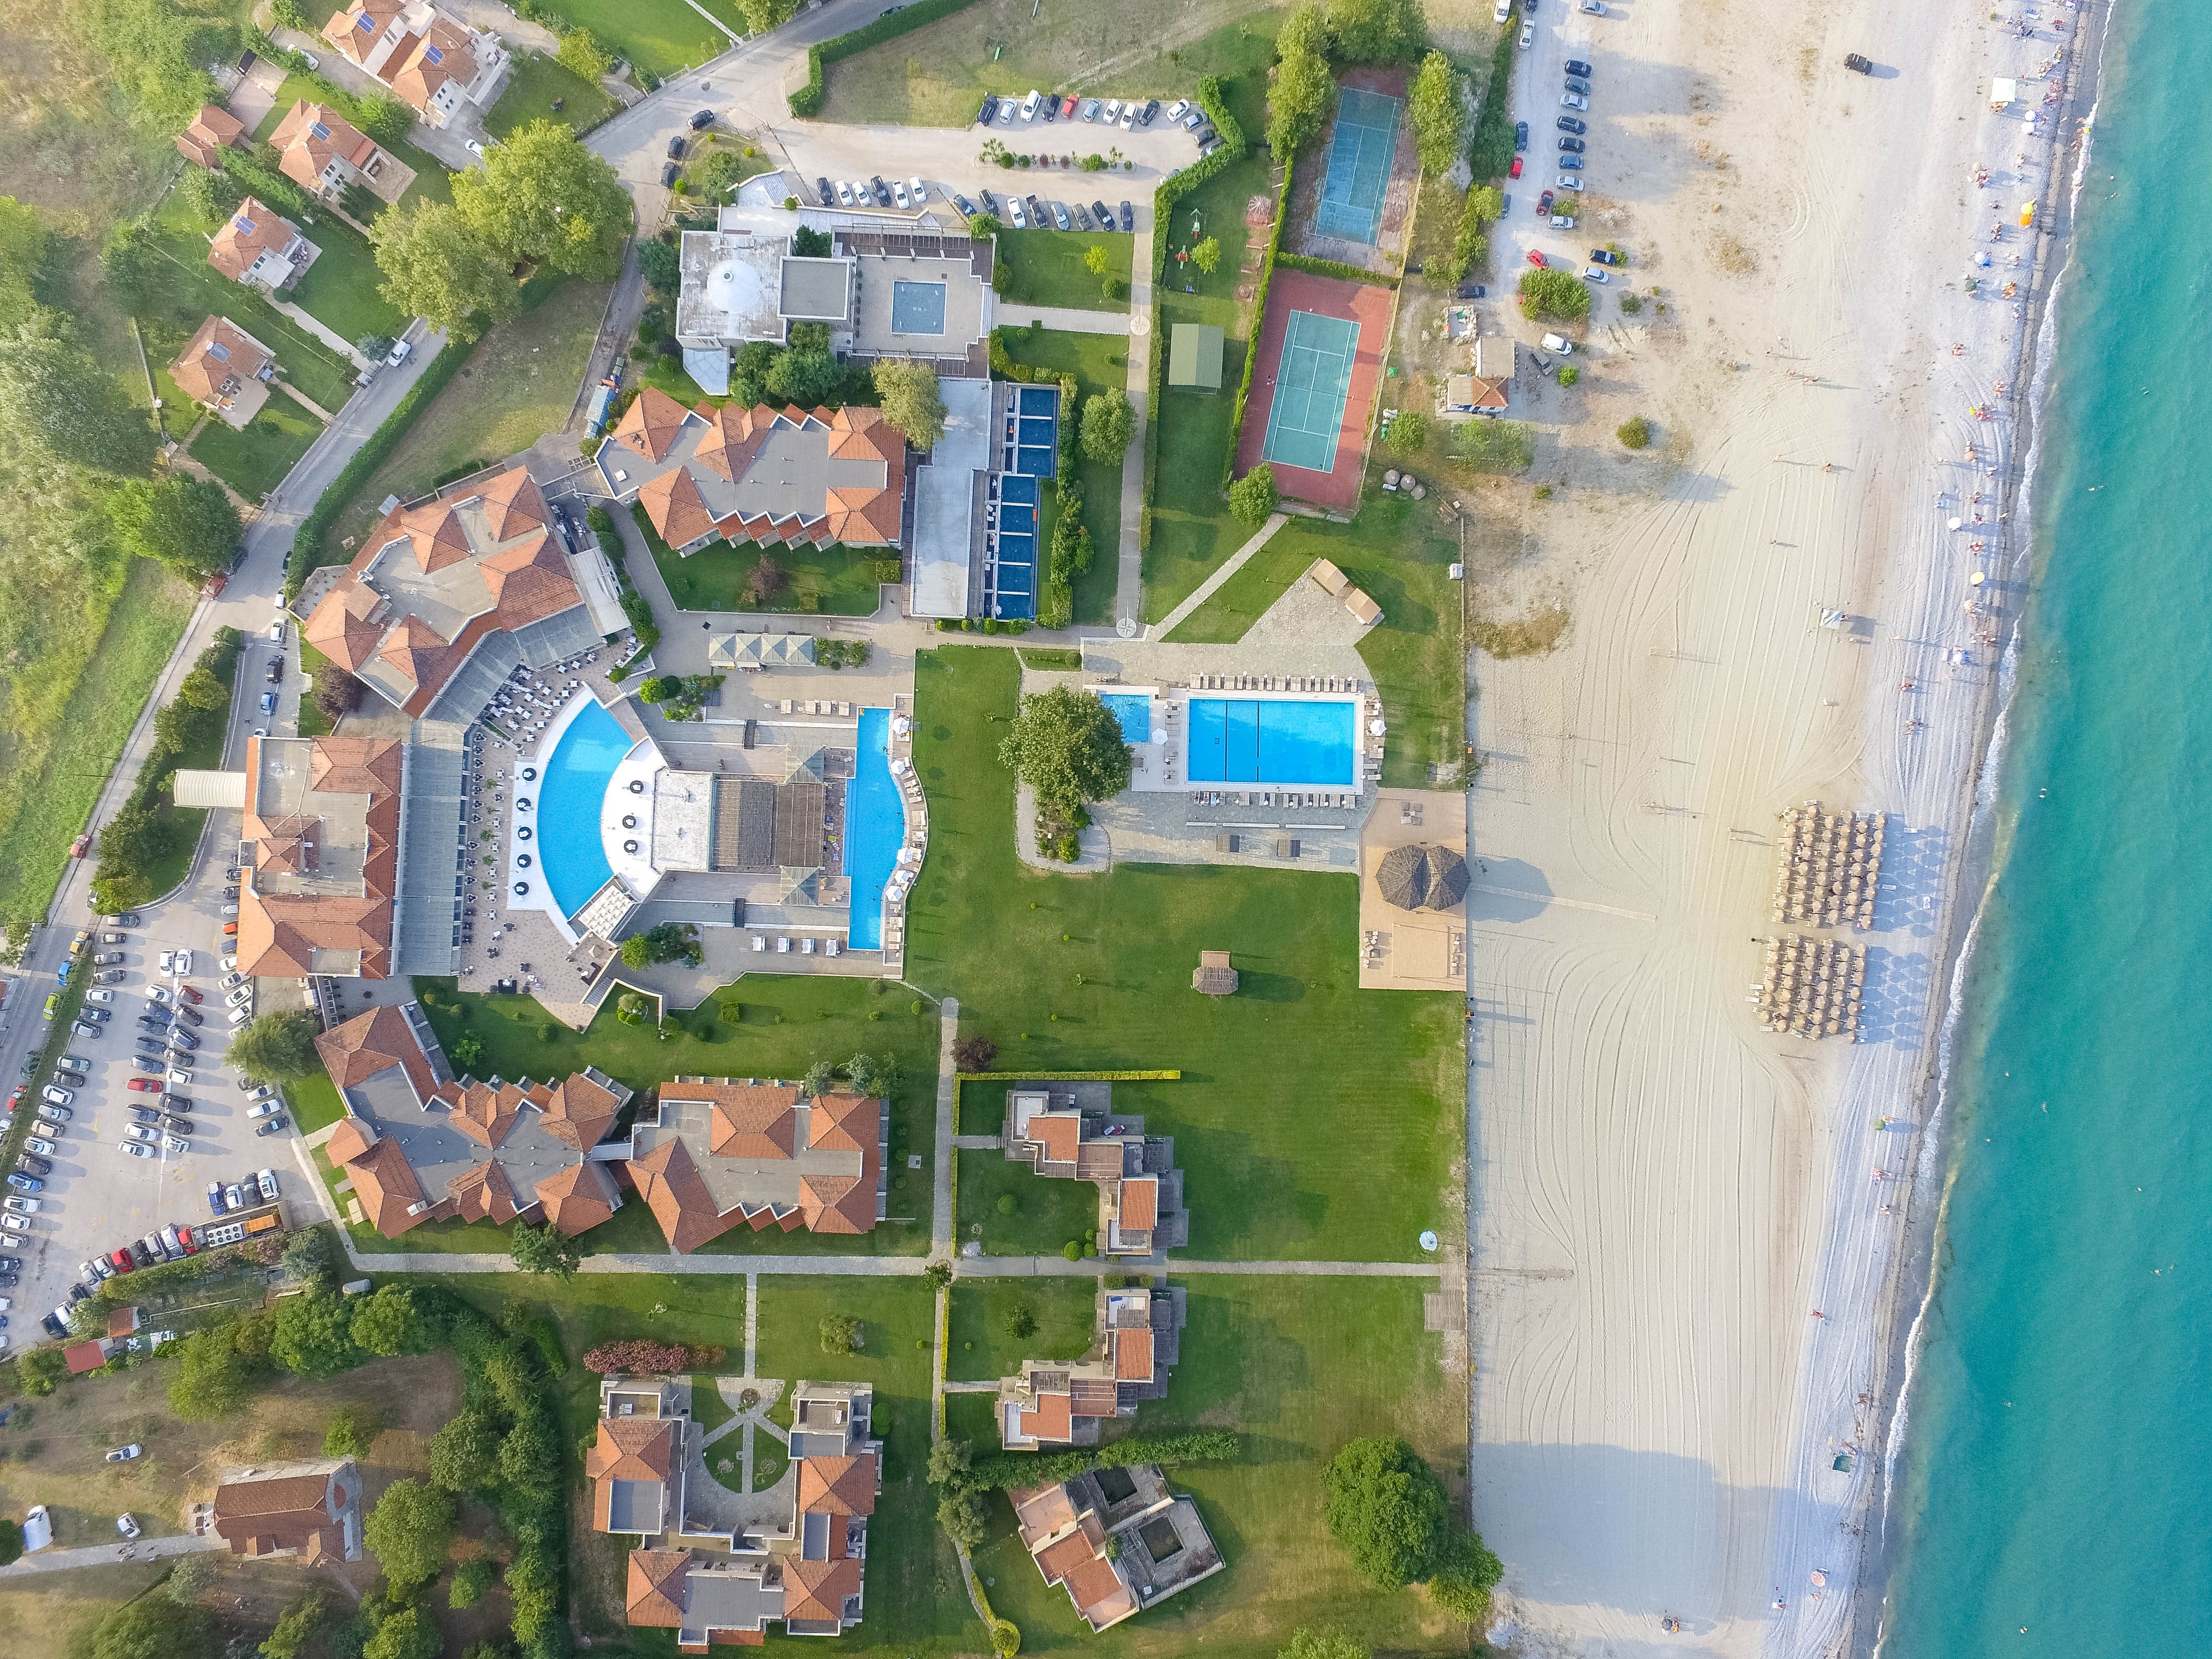 5* Dion Palace Luxury Resort &amp; Spa - Λιτόχωρο ✦ -50% ✦ 3 Ημέρες (2 Διανυκτερεύσεις) ✦ 2 άτομα + 1 παιδί έως 12 ετών ✦ 8 ✦ 11/06/2023 έως 11/07/2023 και 28/08/2023 έως 17/09/2023 ✦ Μπροστά σε παραλία!